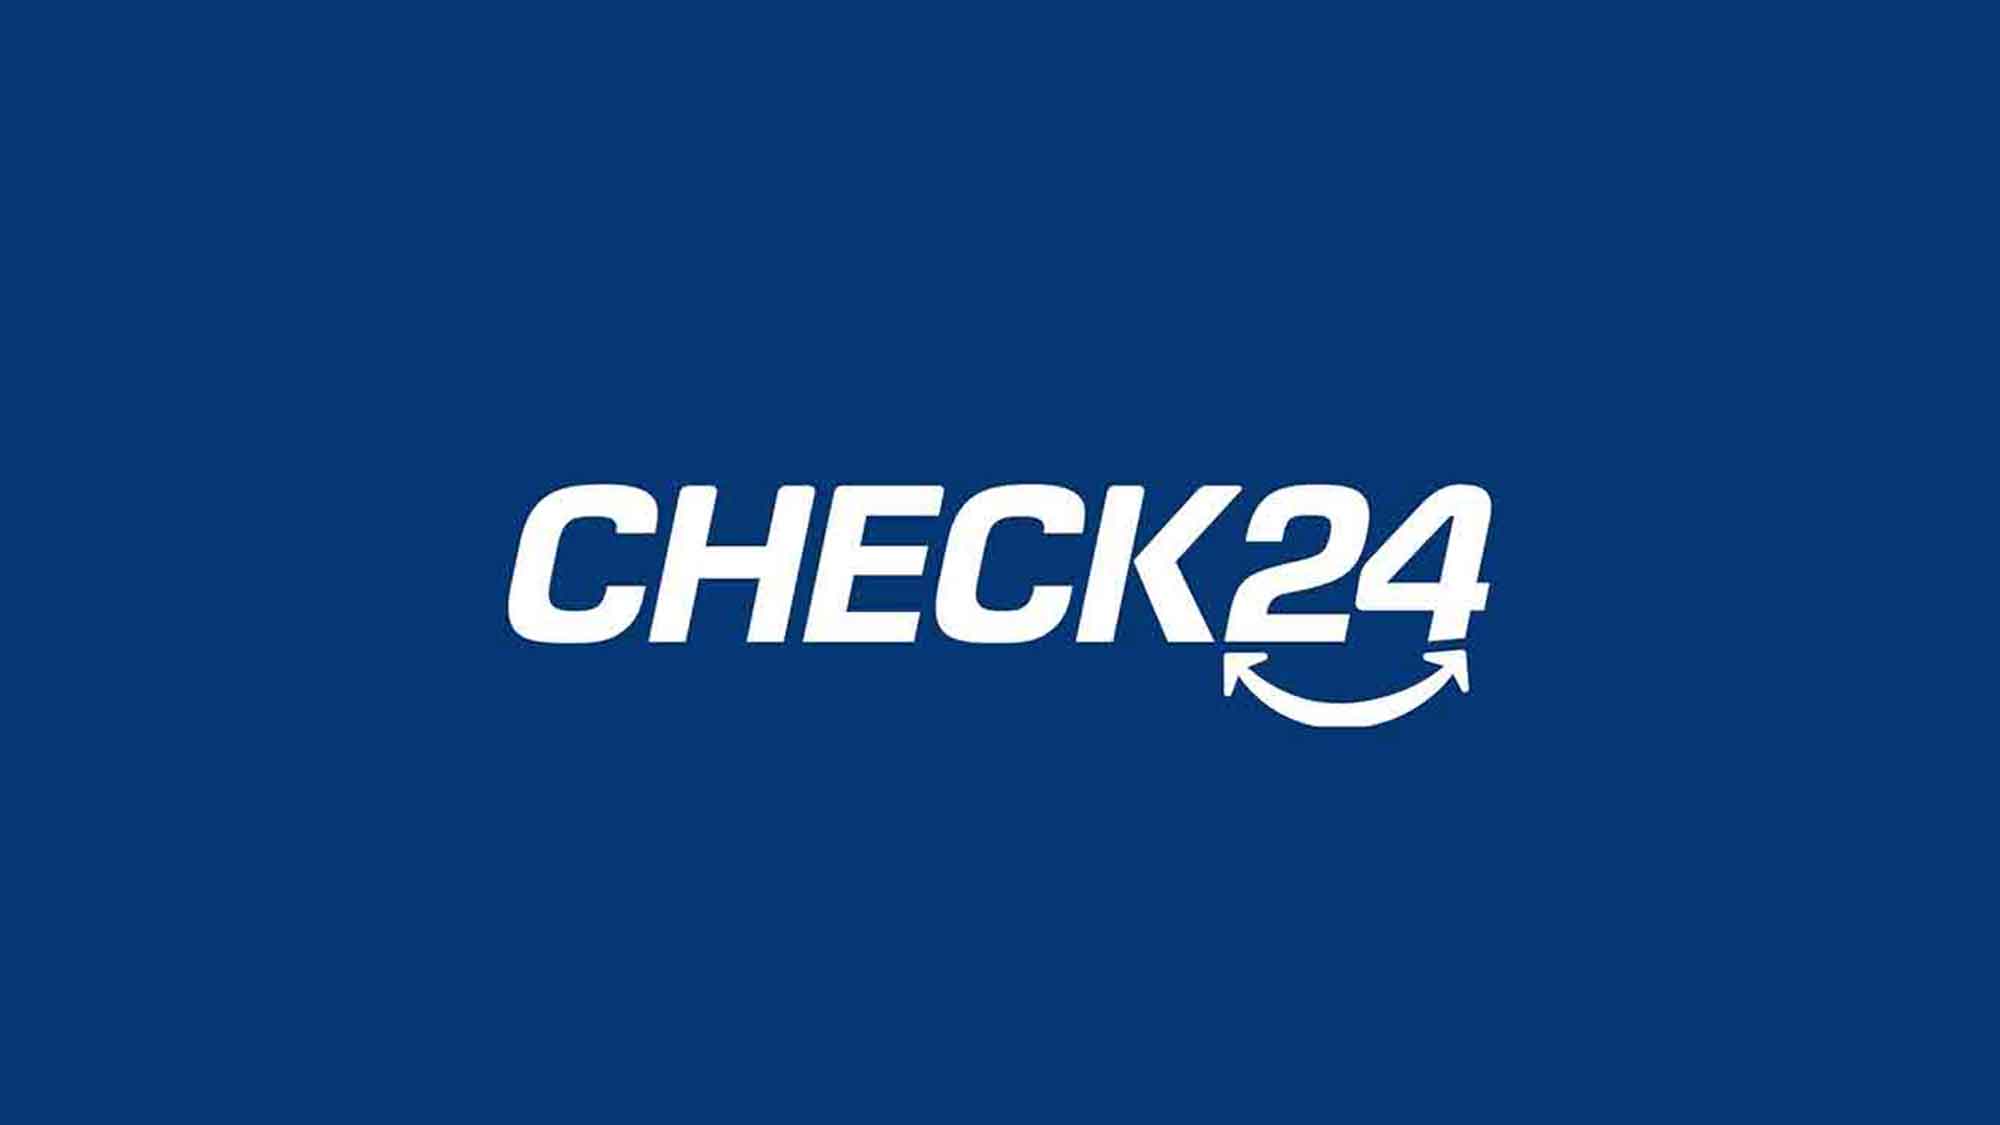 Stiftung Warentest: »Check24« ist das beste Online Reisebüro für Pauschalreisen